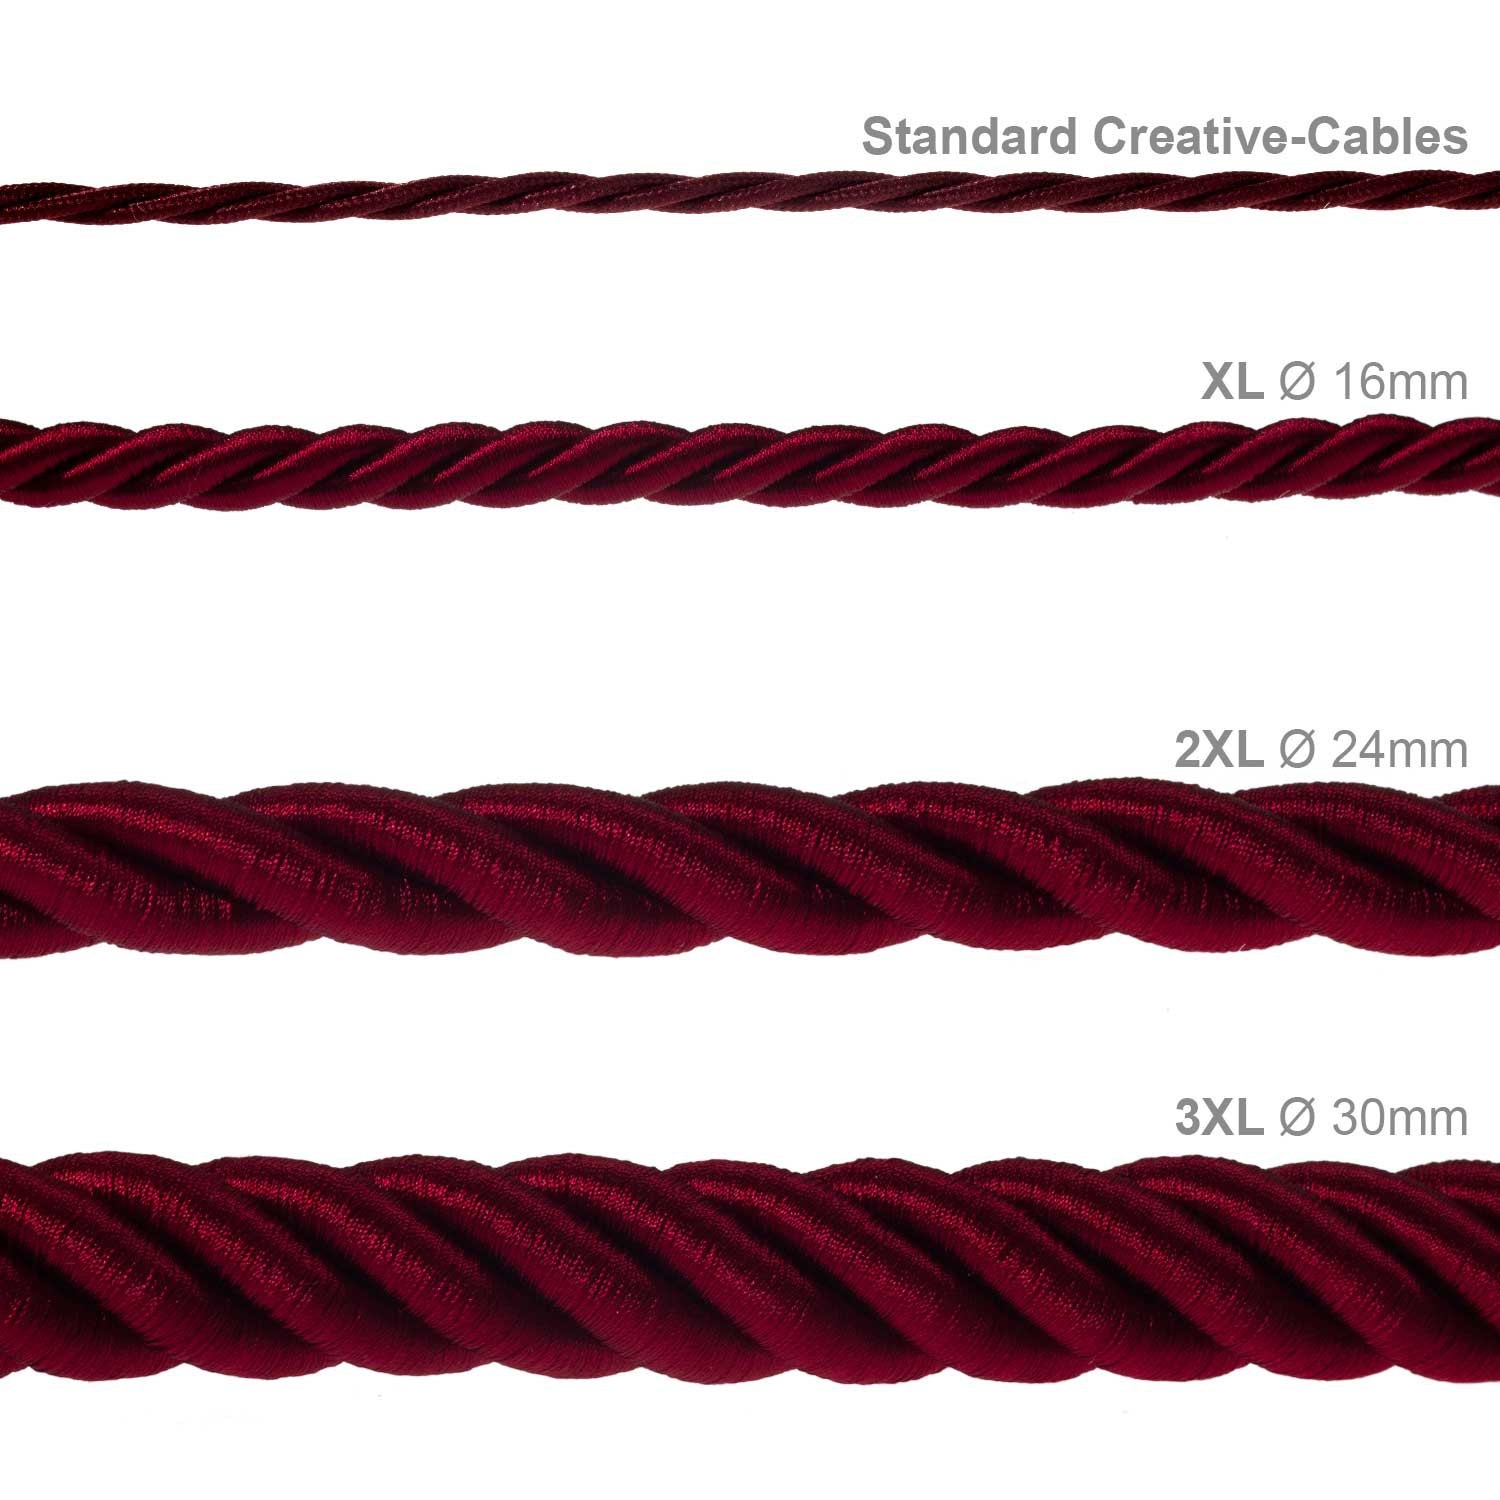 Electrische XL touwkabel, 3 x 0,75 mm. Binnenkabels bedekt met bordeaux textiel. Diameter 16 mm.